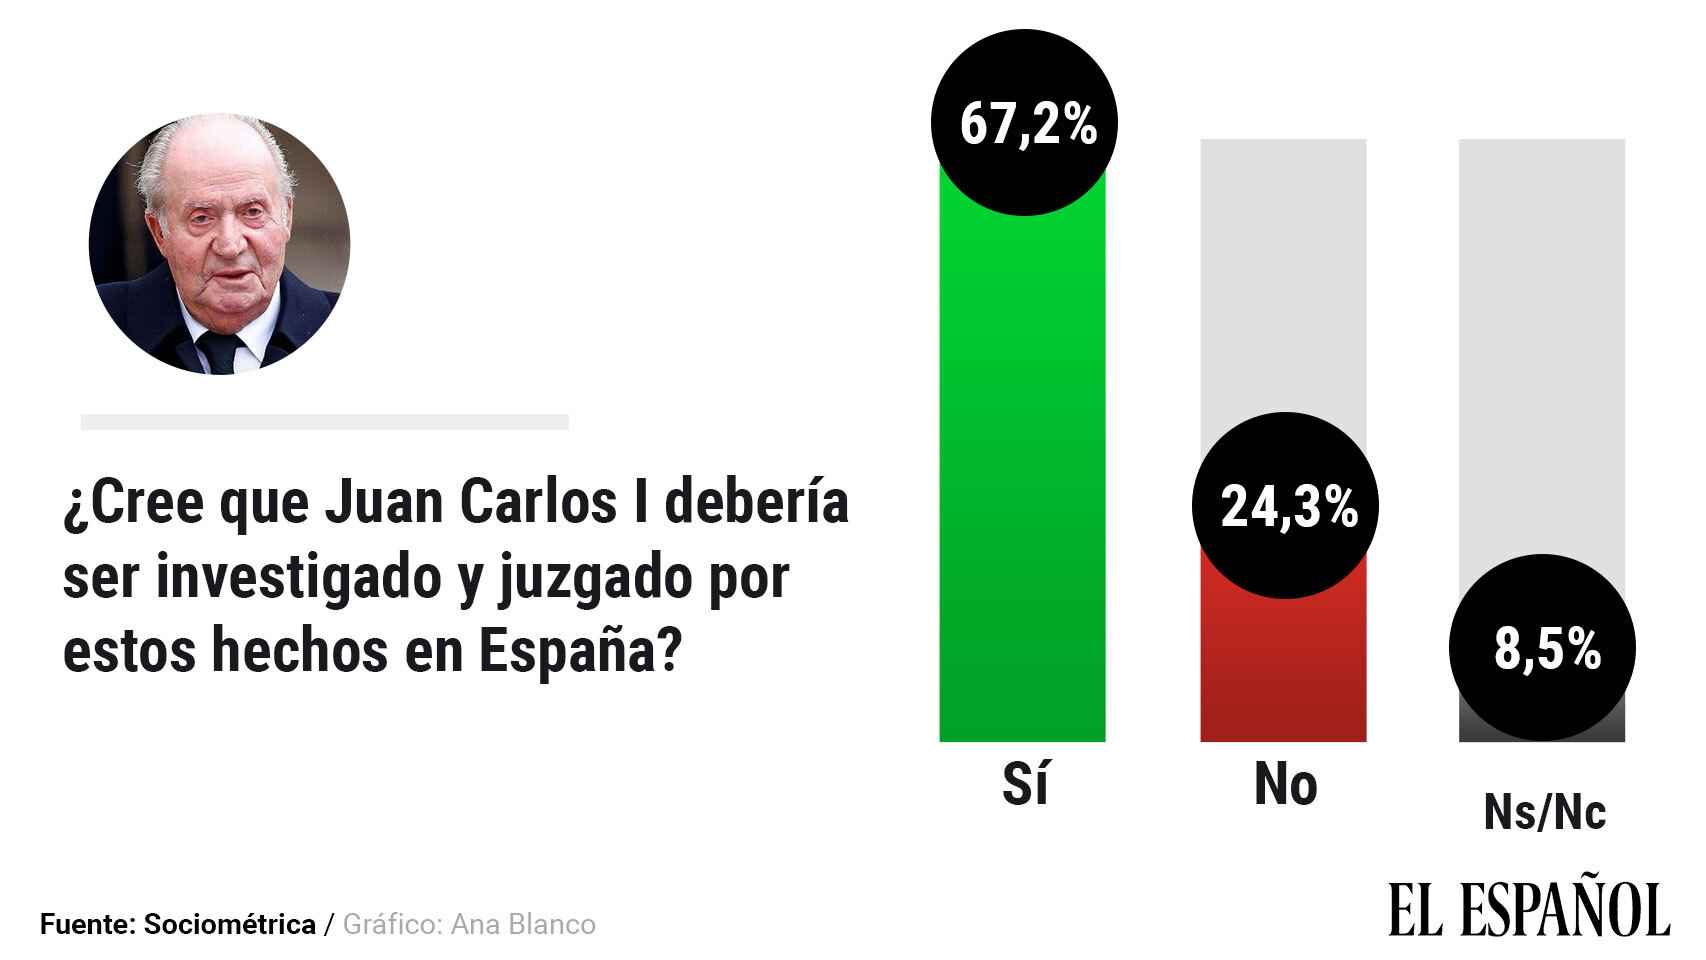 El 67,2% de los españoles creen que debe ser juzgado por estos hechos en España.